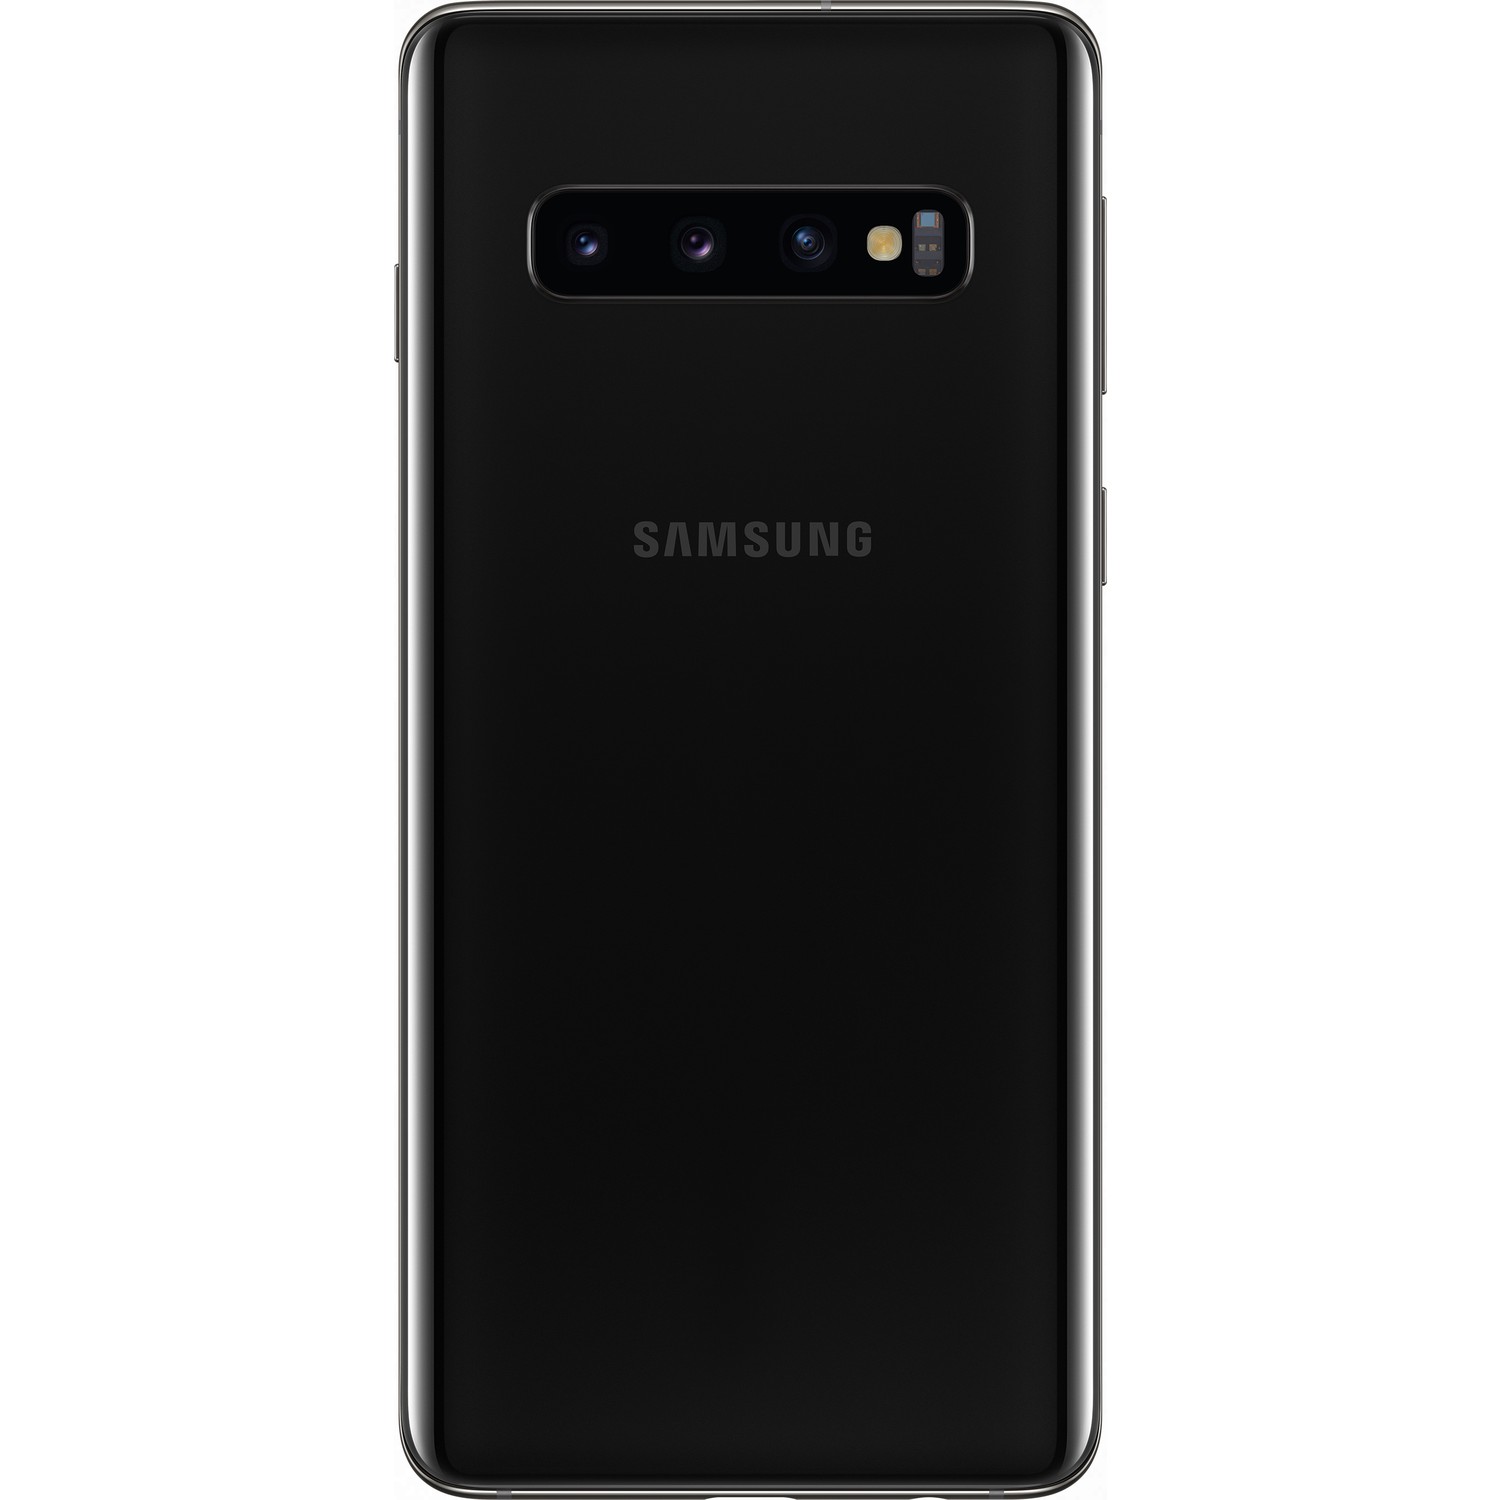 Samsung Galaxy S10 serisi tanıtıldı!